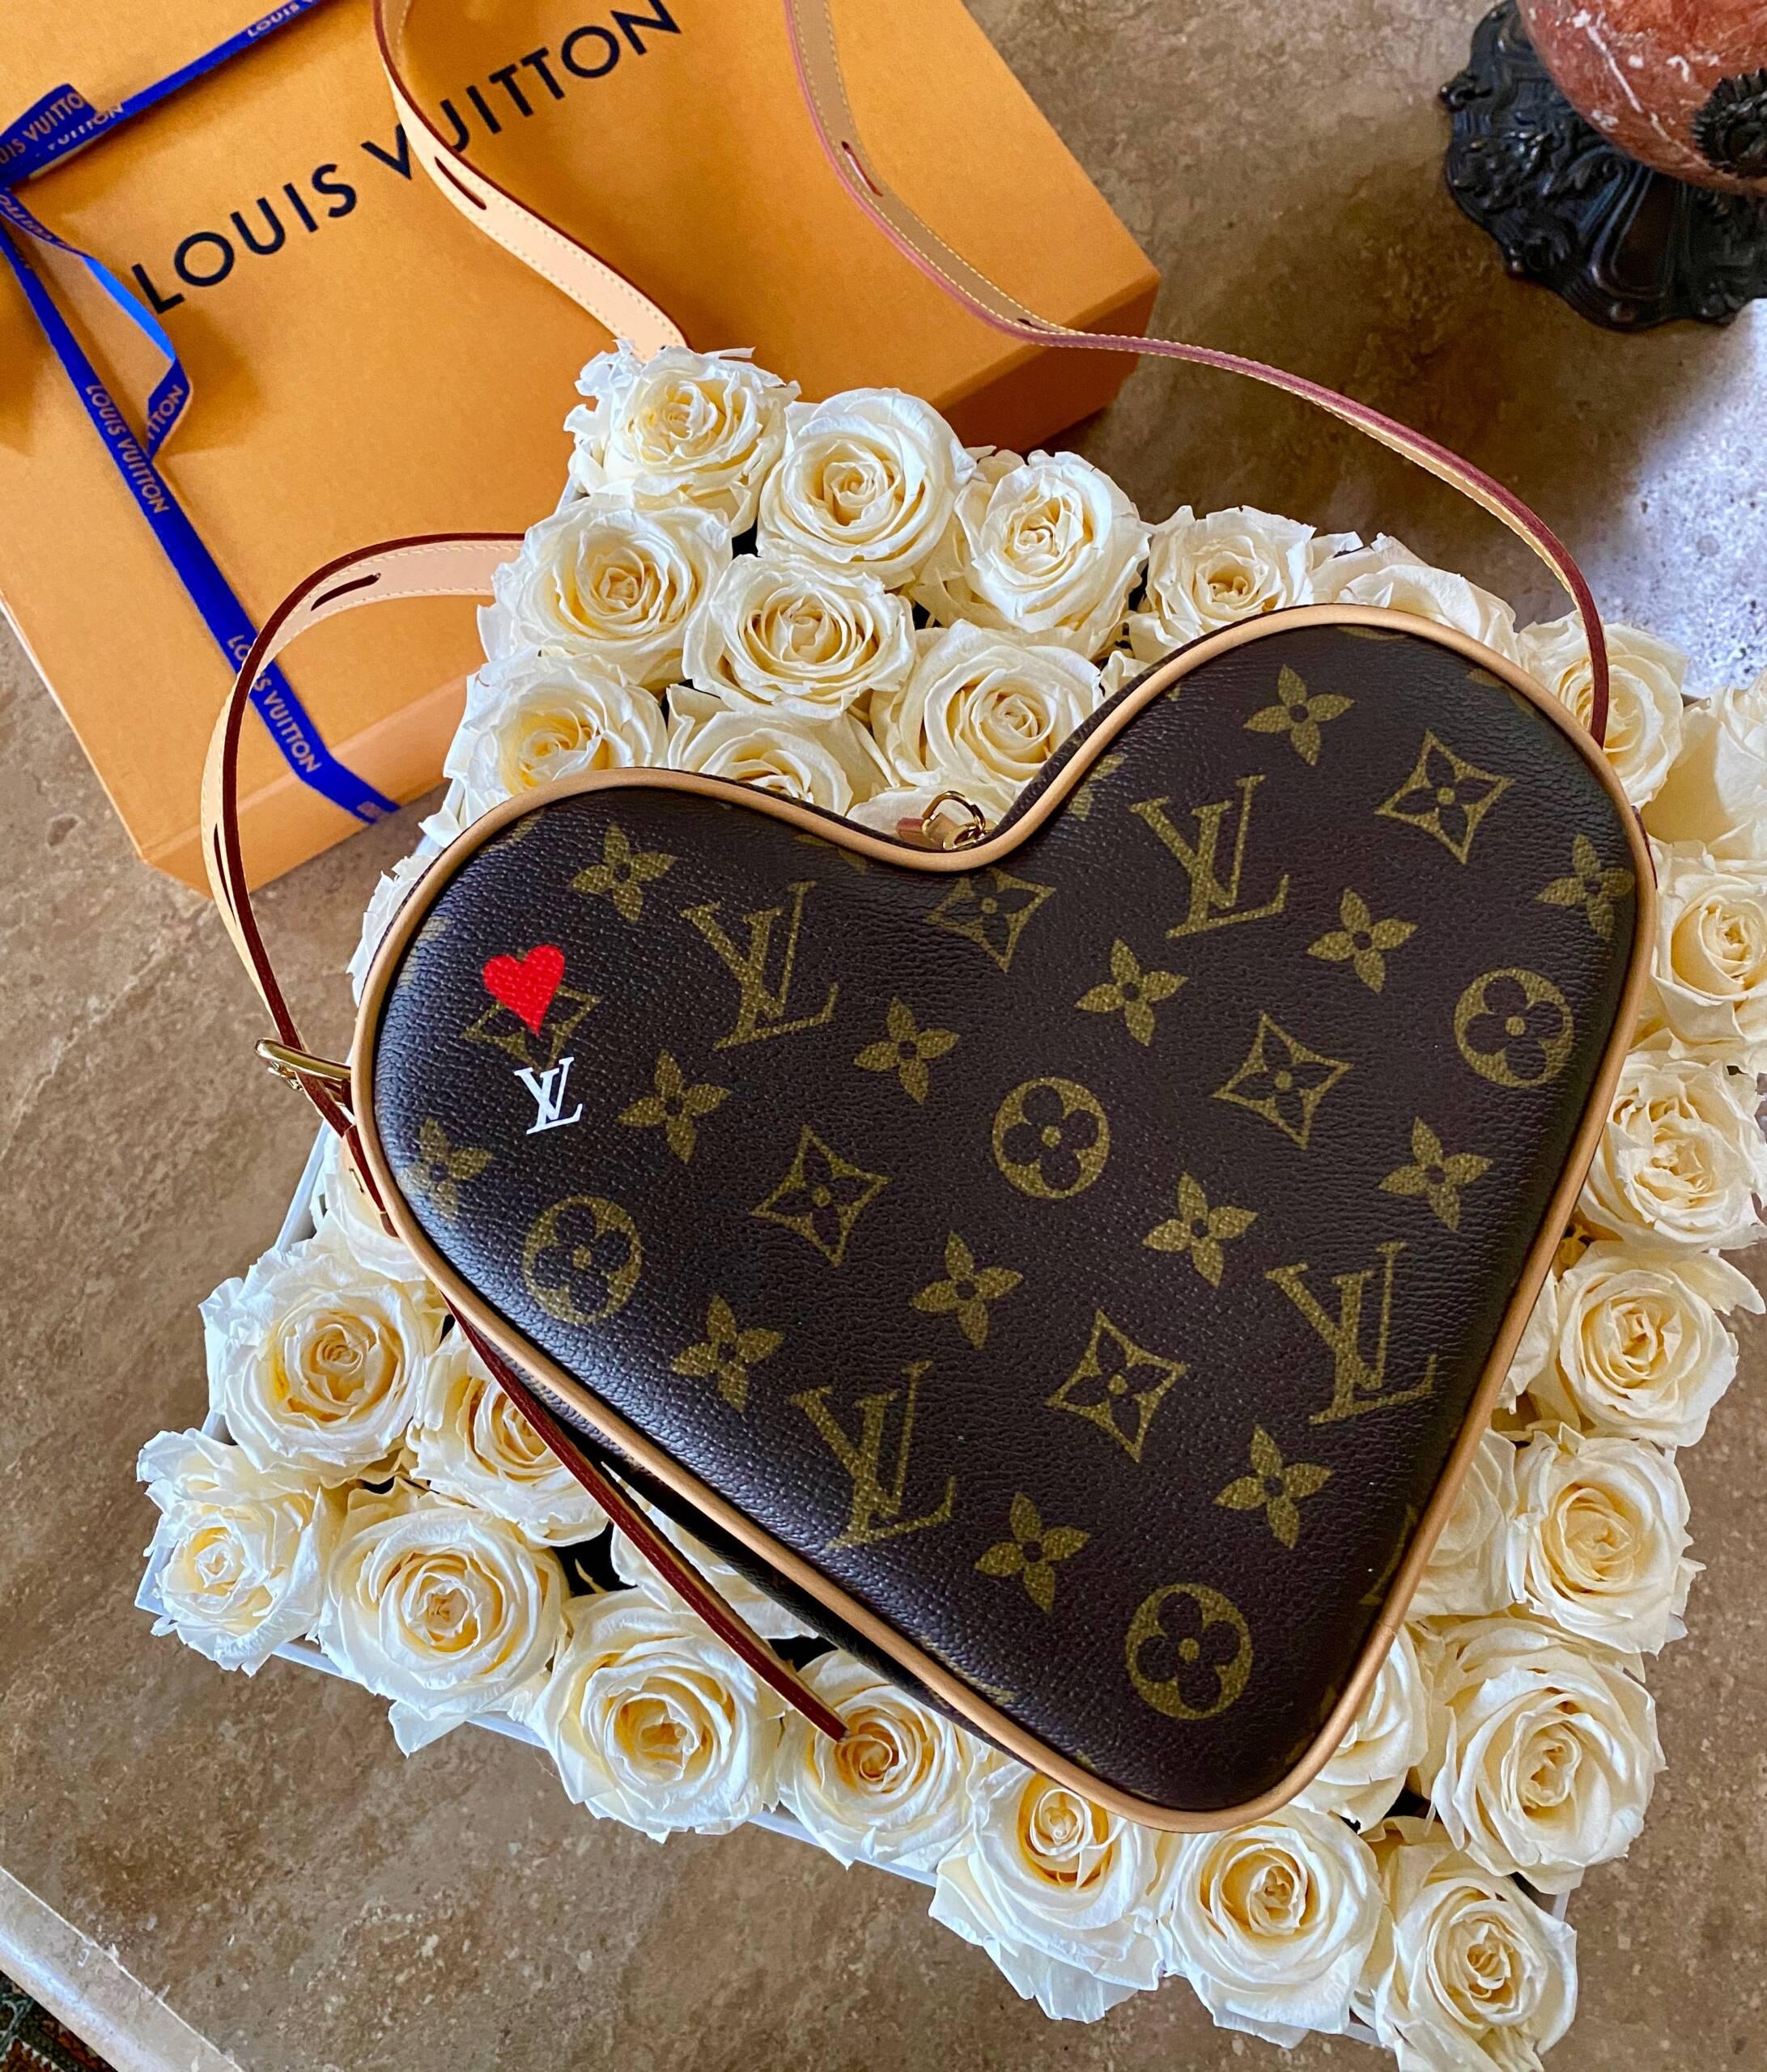 PurseBop Reveals the Louis Vuitton New Heart-Shaped Monogram Bag